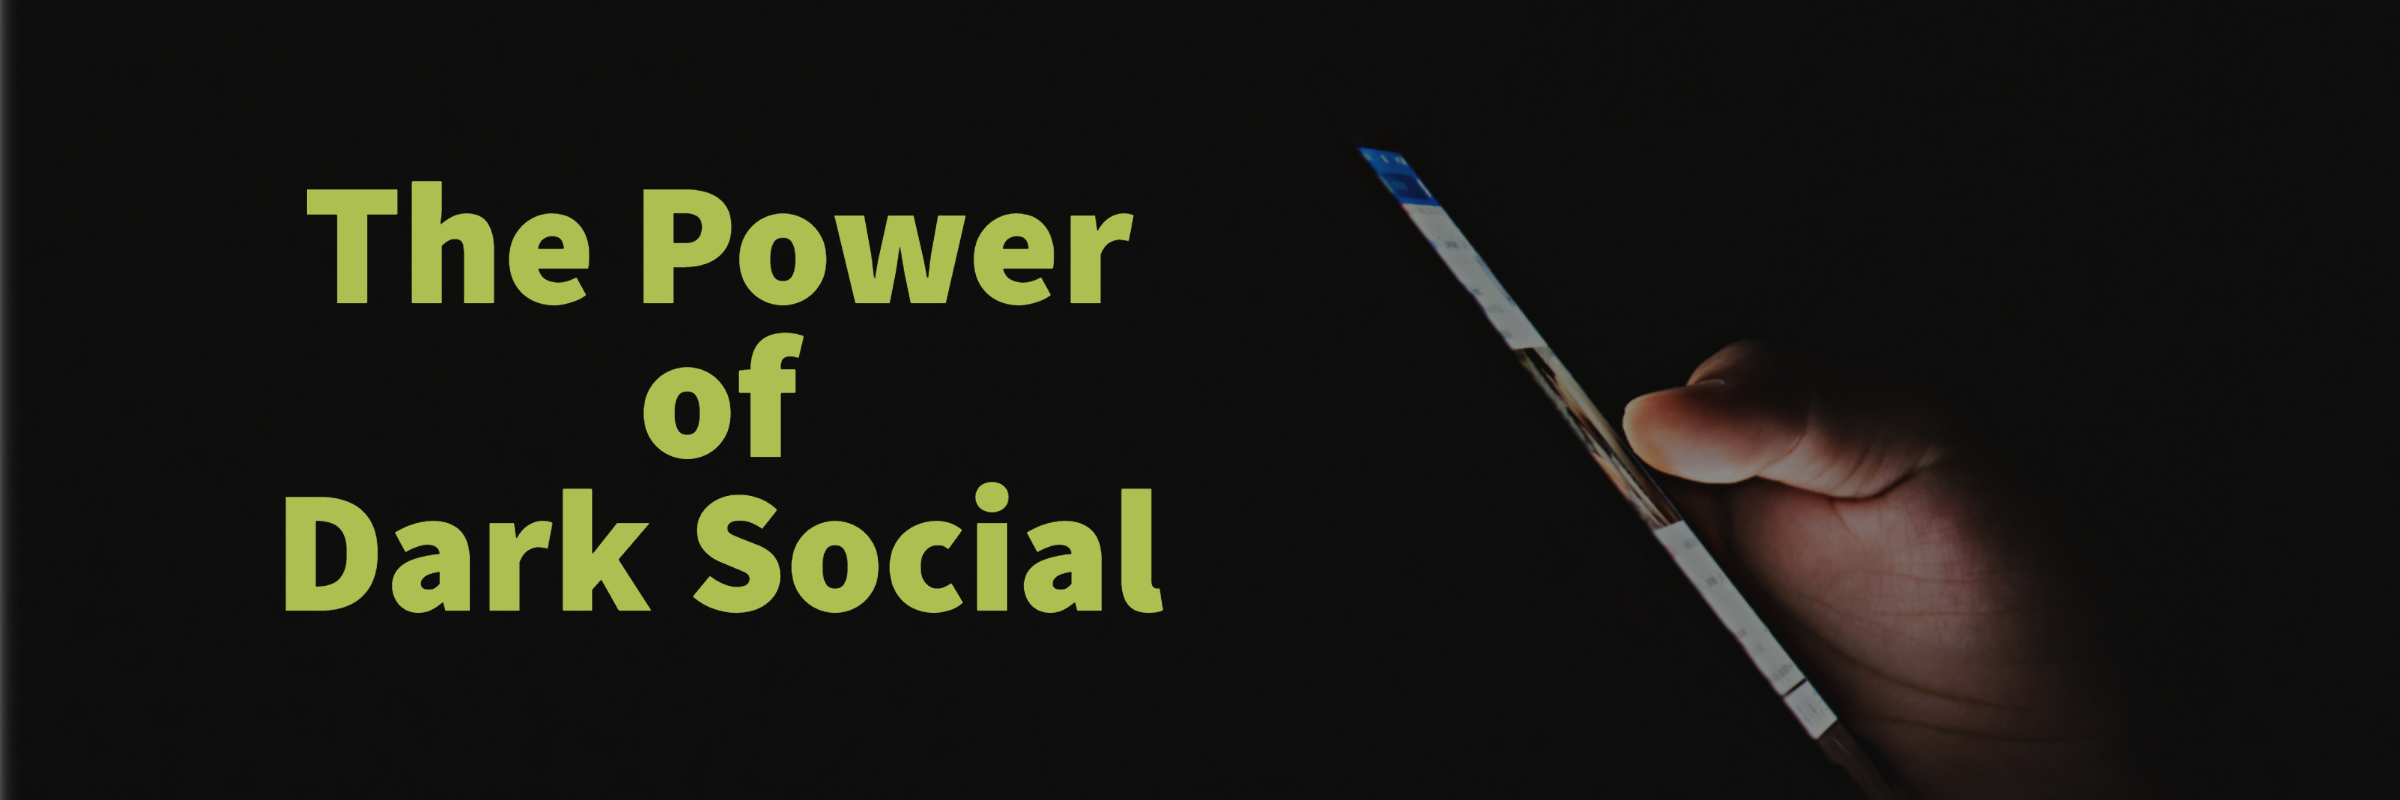 Power of Dark Social